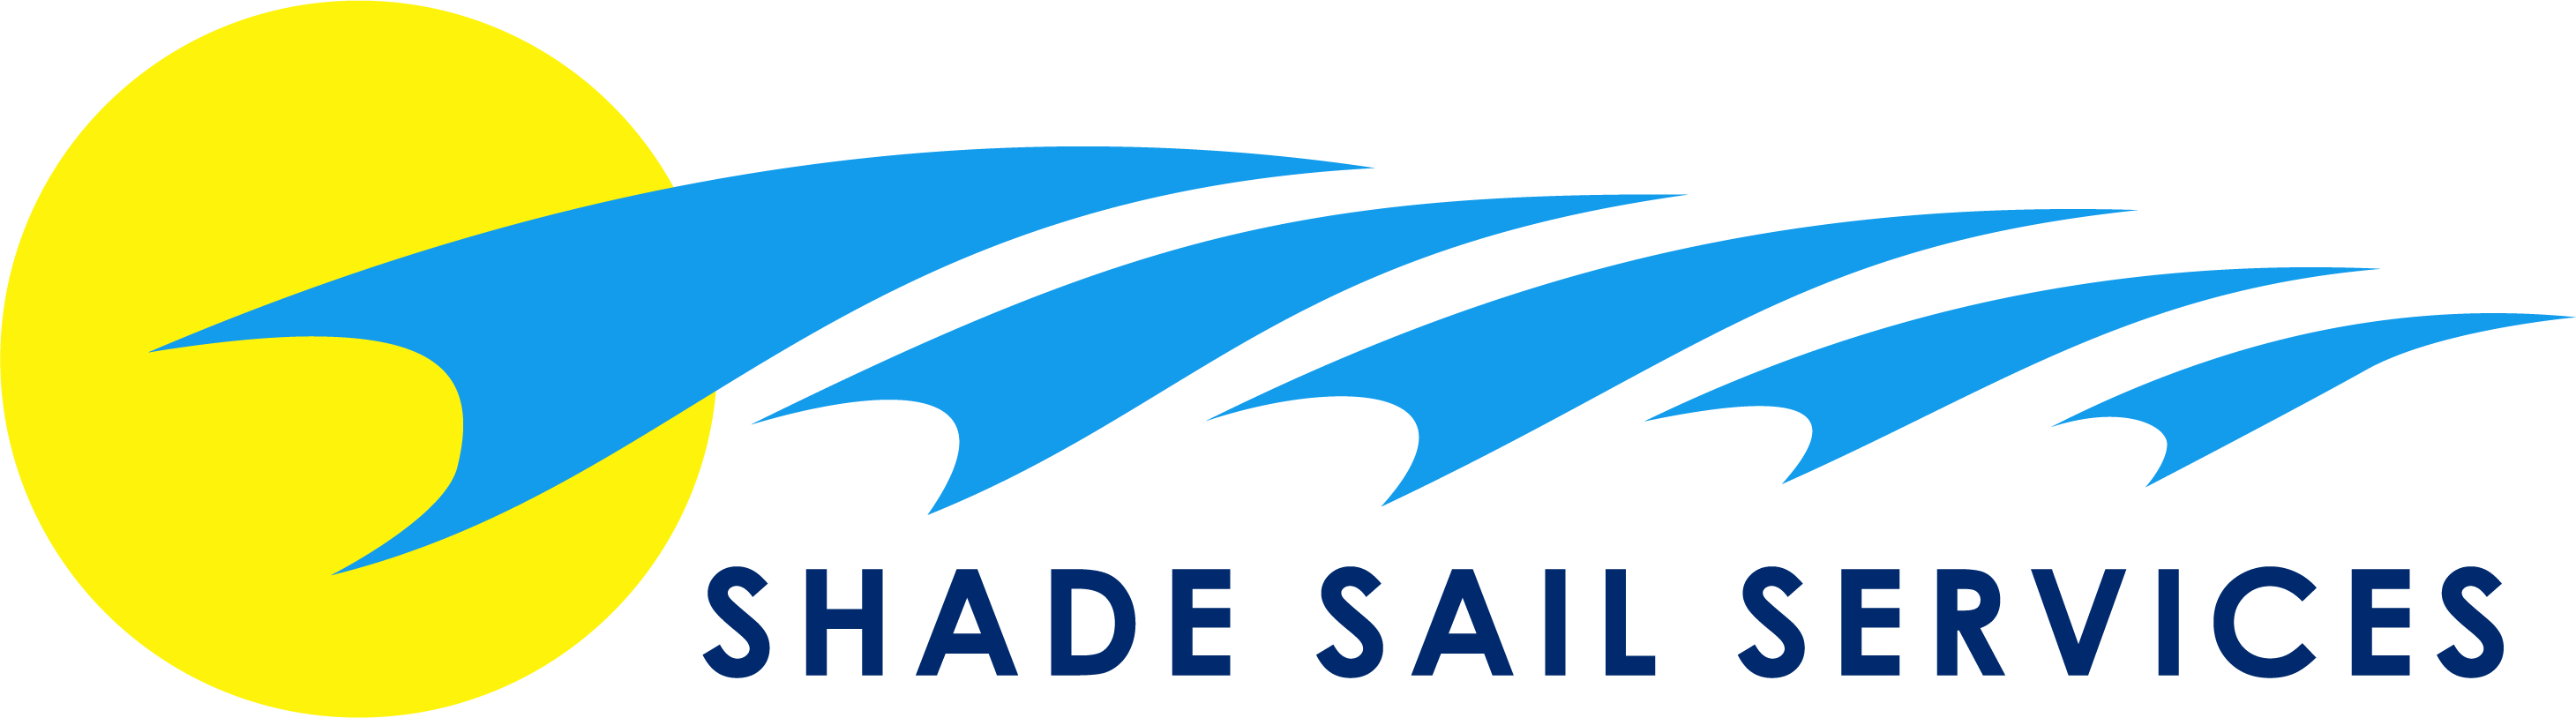 Shade Sail Services